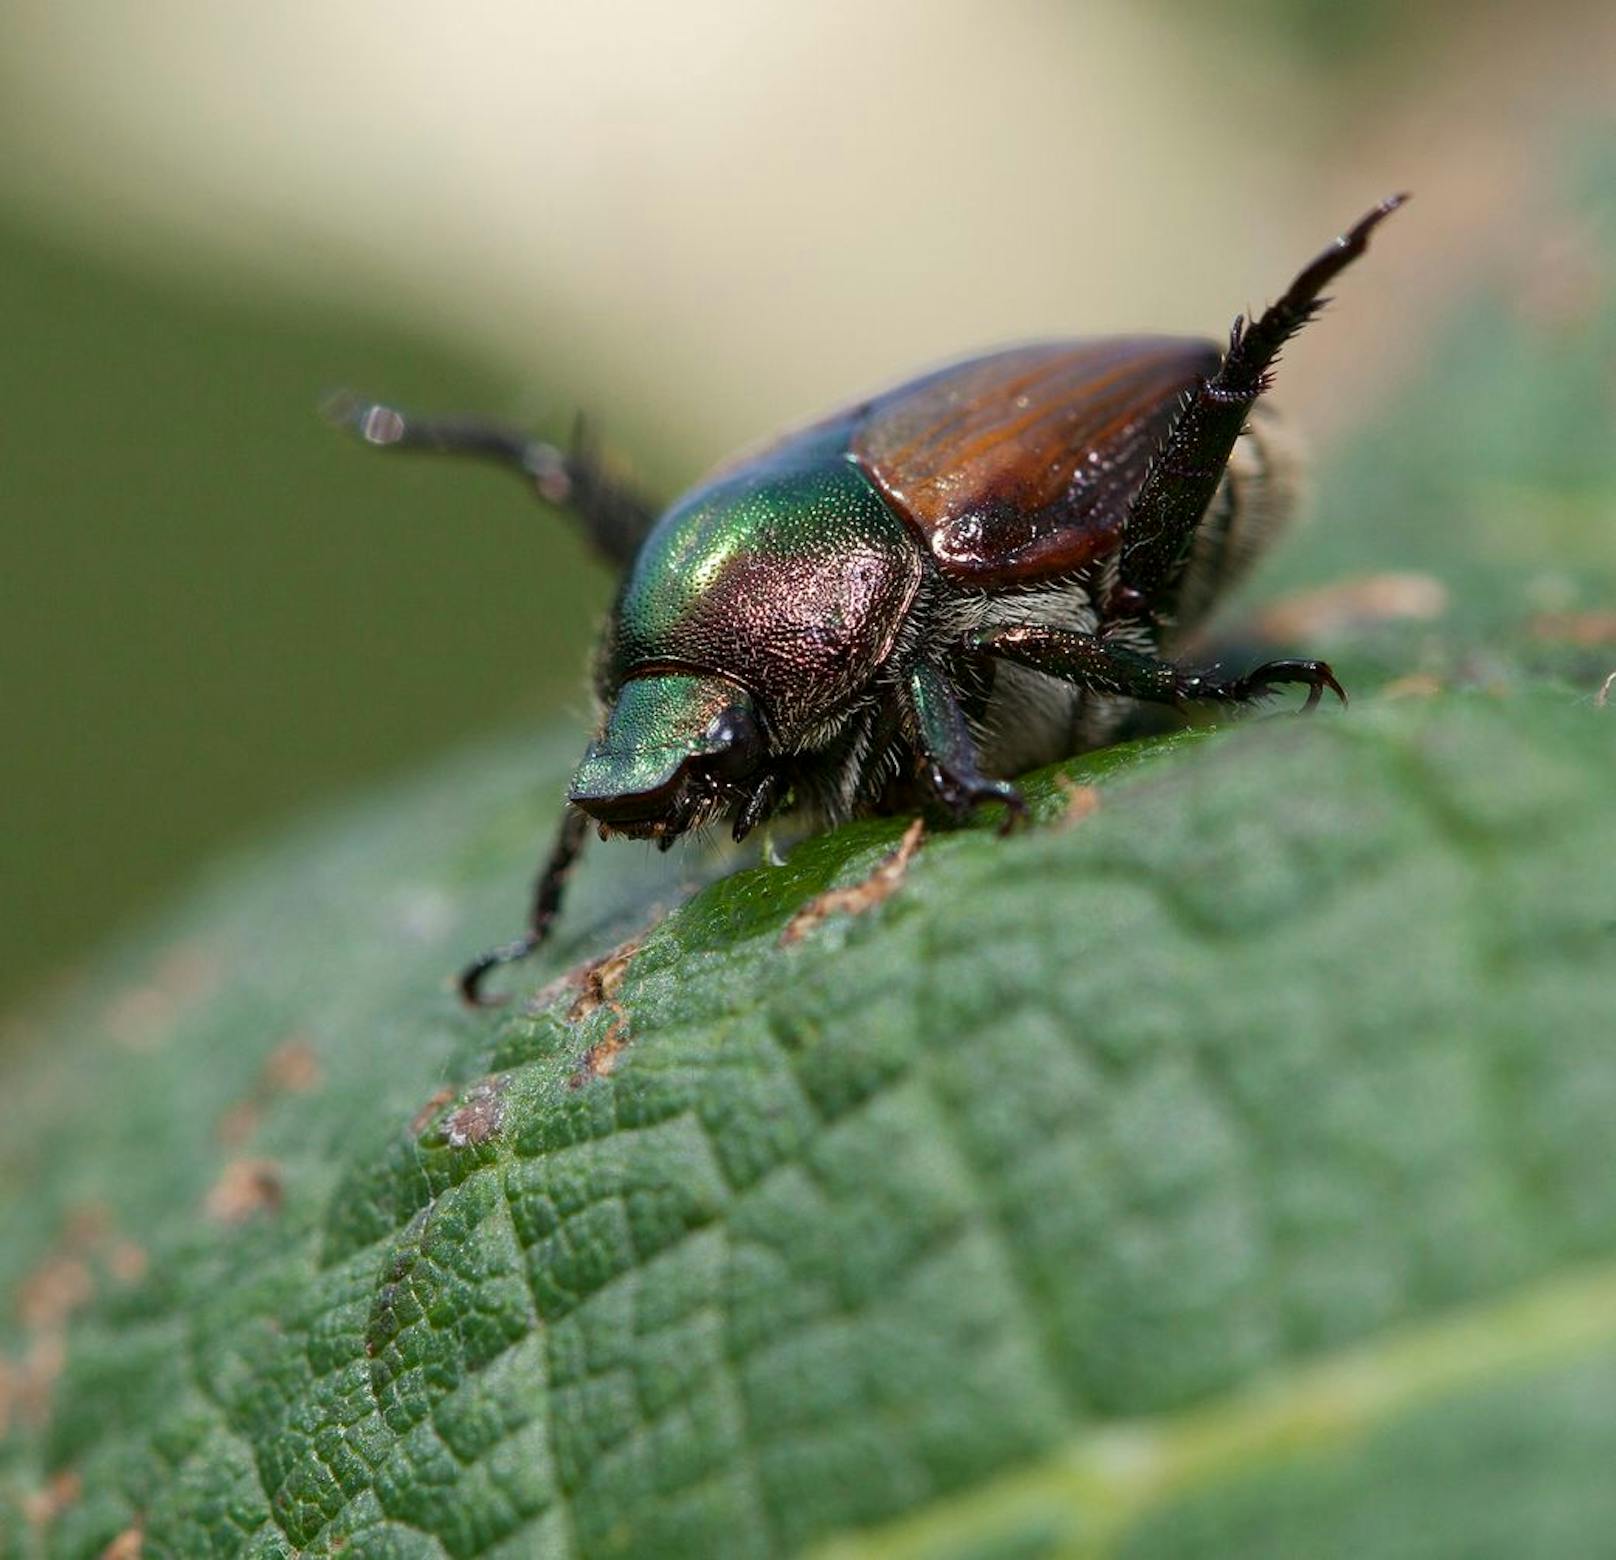 Das wohl größte Problem des Käfers ist seine Fresslust - mehr als 300 Pflanzenarten&nbsp; stehen auf seinem Speiseplan, die er richtig skelettiert zurücklässt.&nbsp;